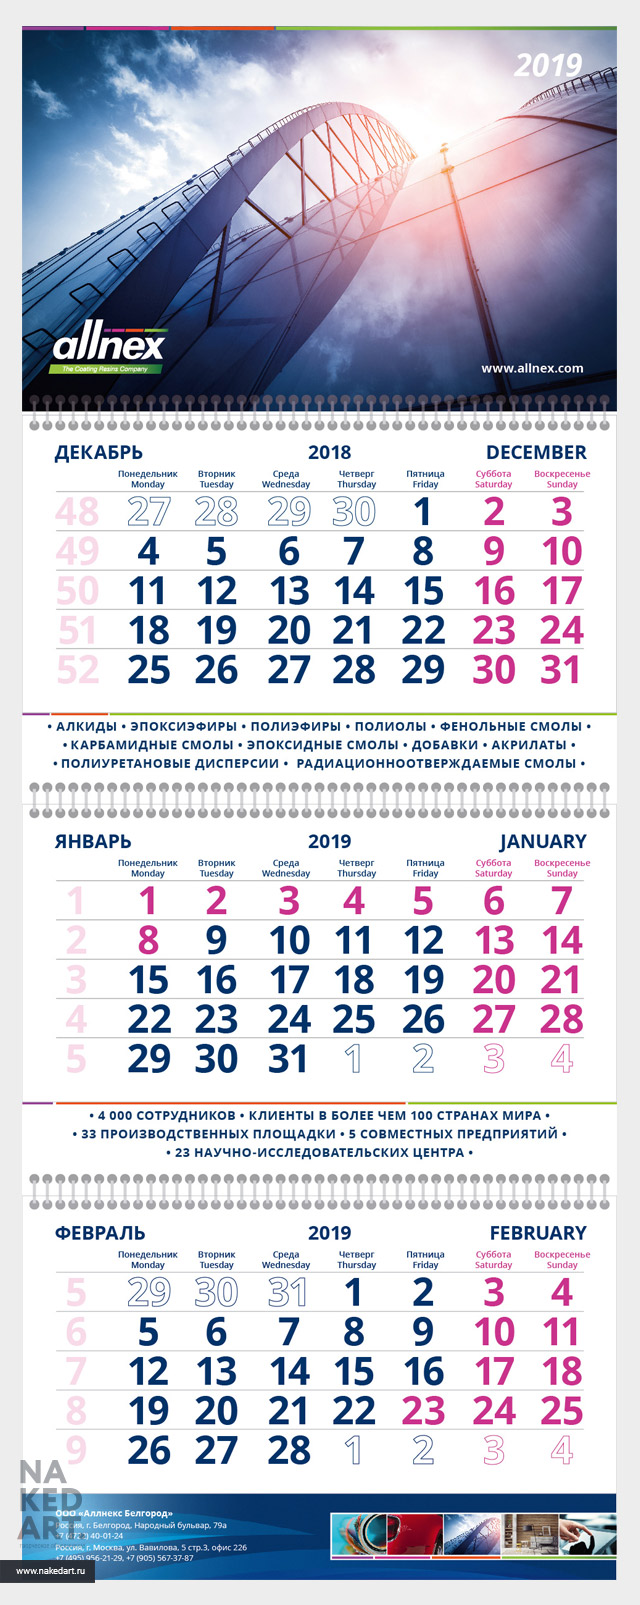 Дизайн квартального календаря компании Allnex пример